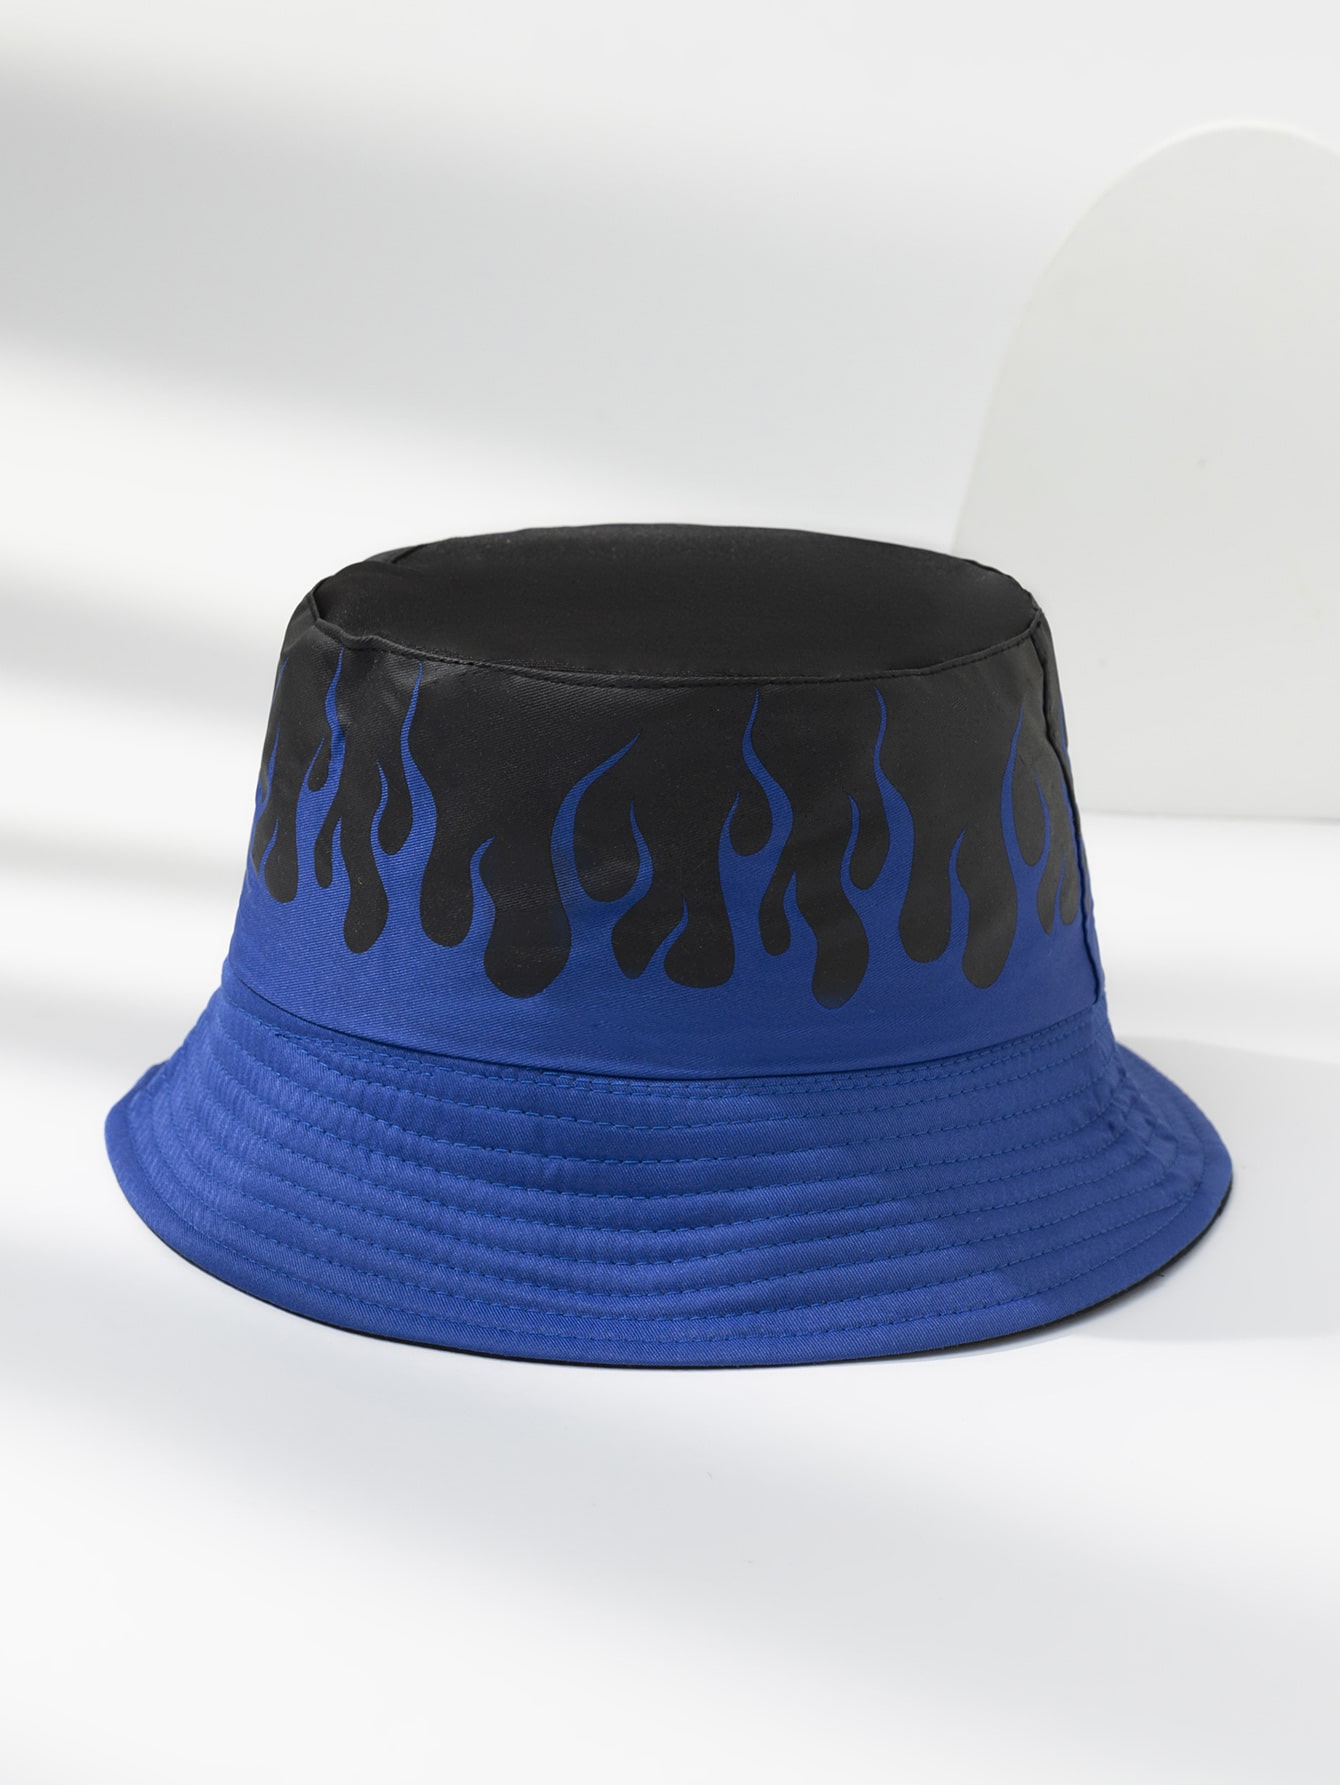 Мужская двусторонняя персонализированная рыбацкая шляпа с принтом пламени, синий